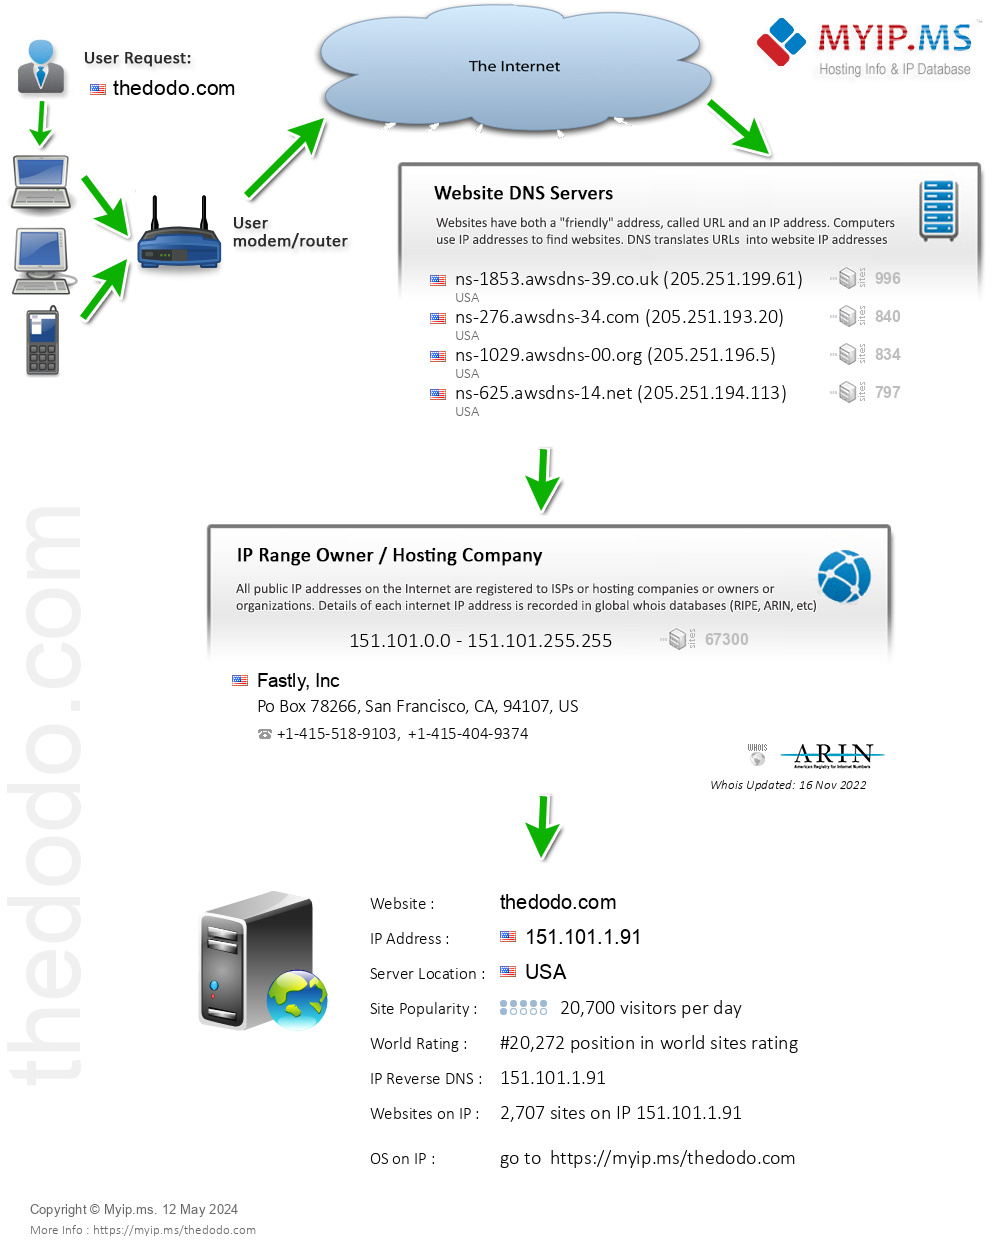 Thedodo.com - Website Hosting Visual IP Diagram